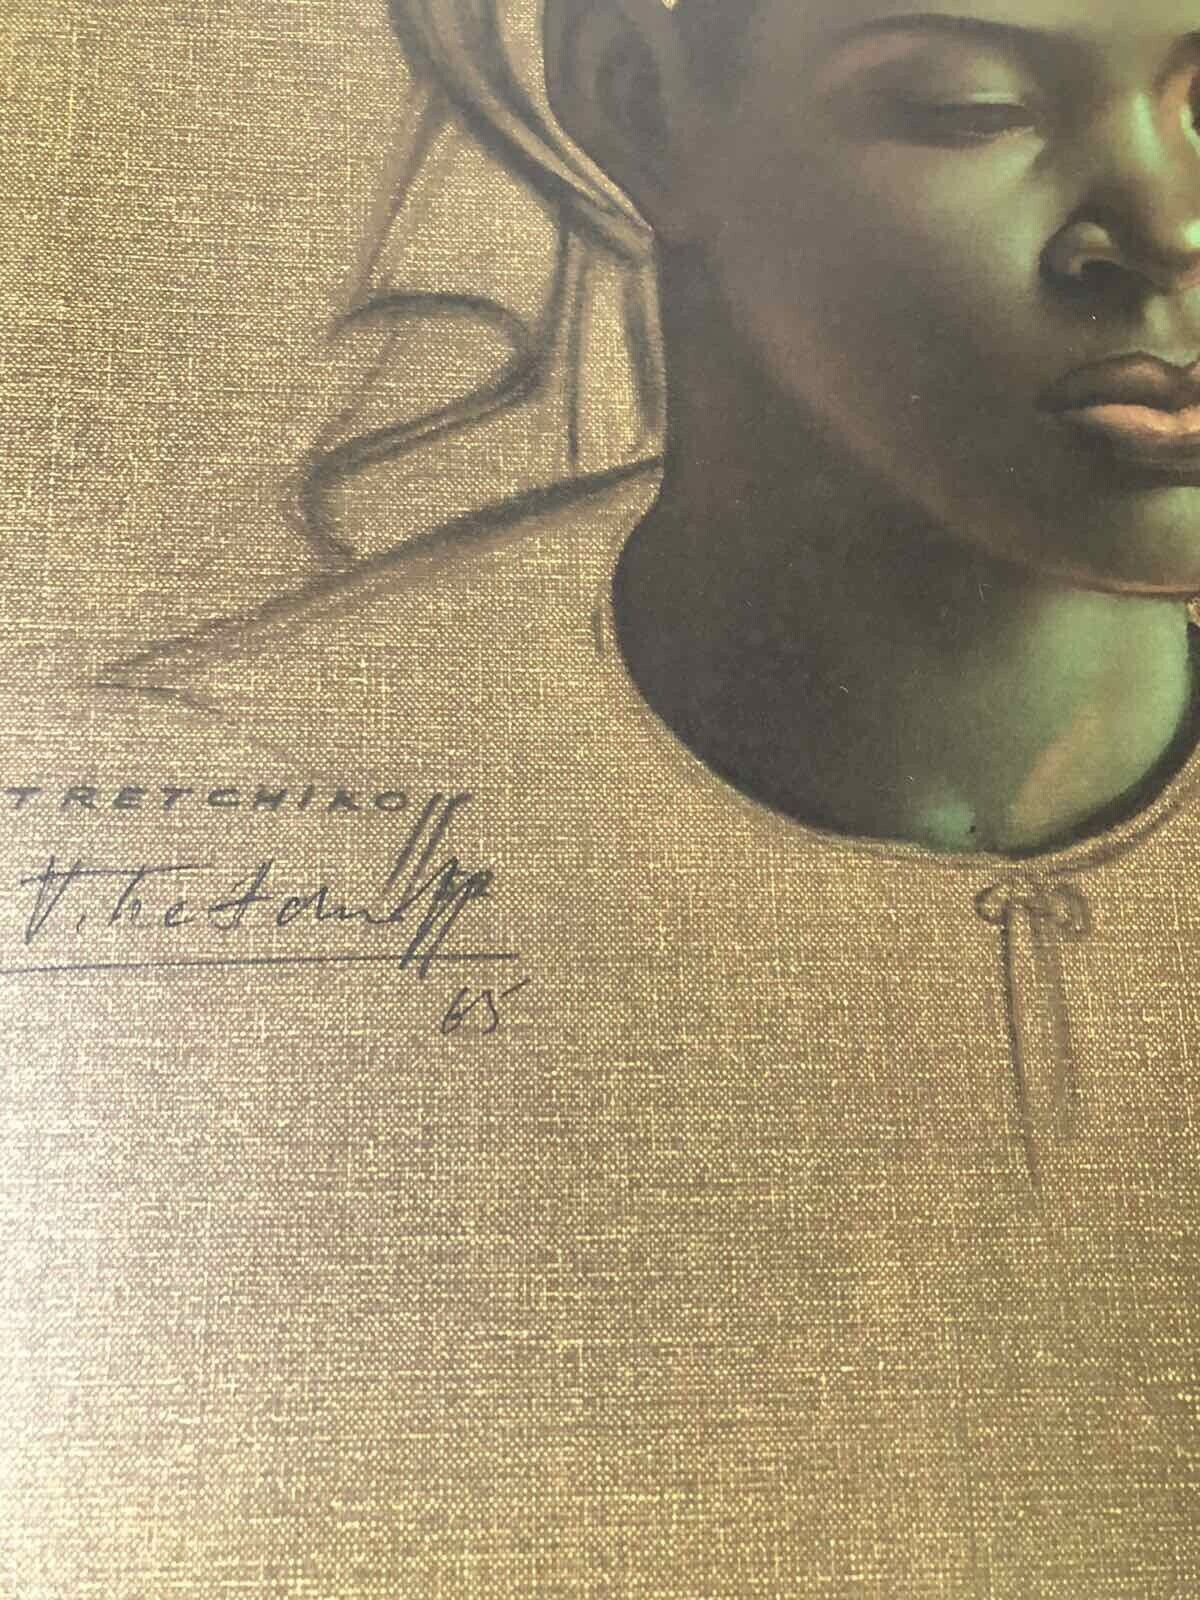 tretchikoff print vintage Zulu Maiden Original Hand Signed